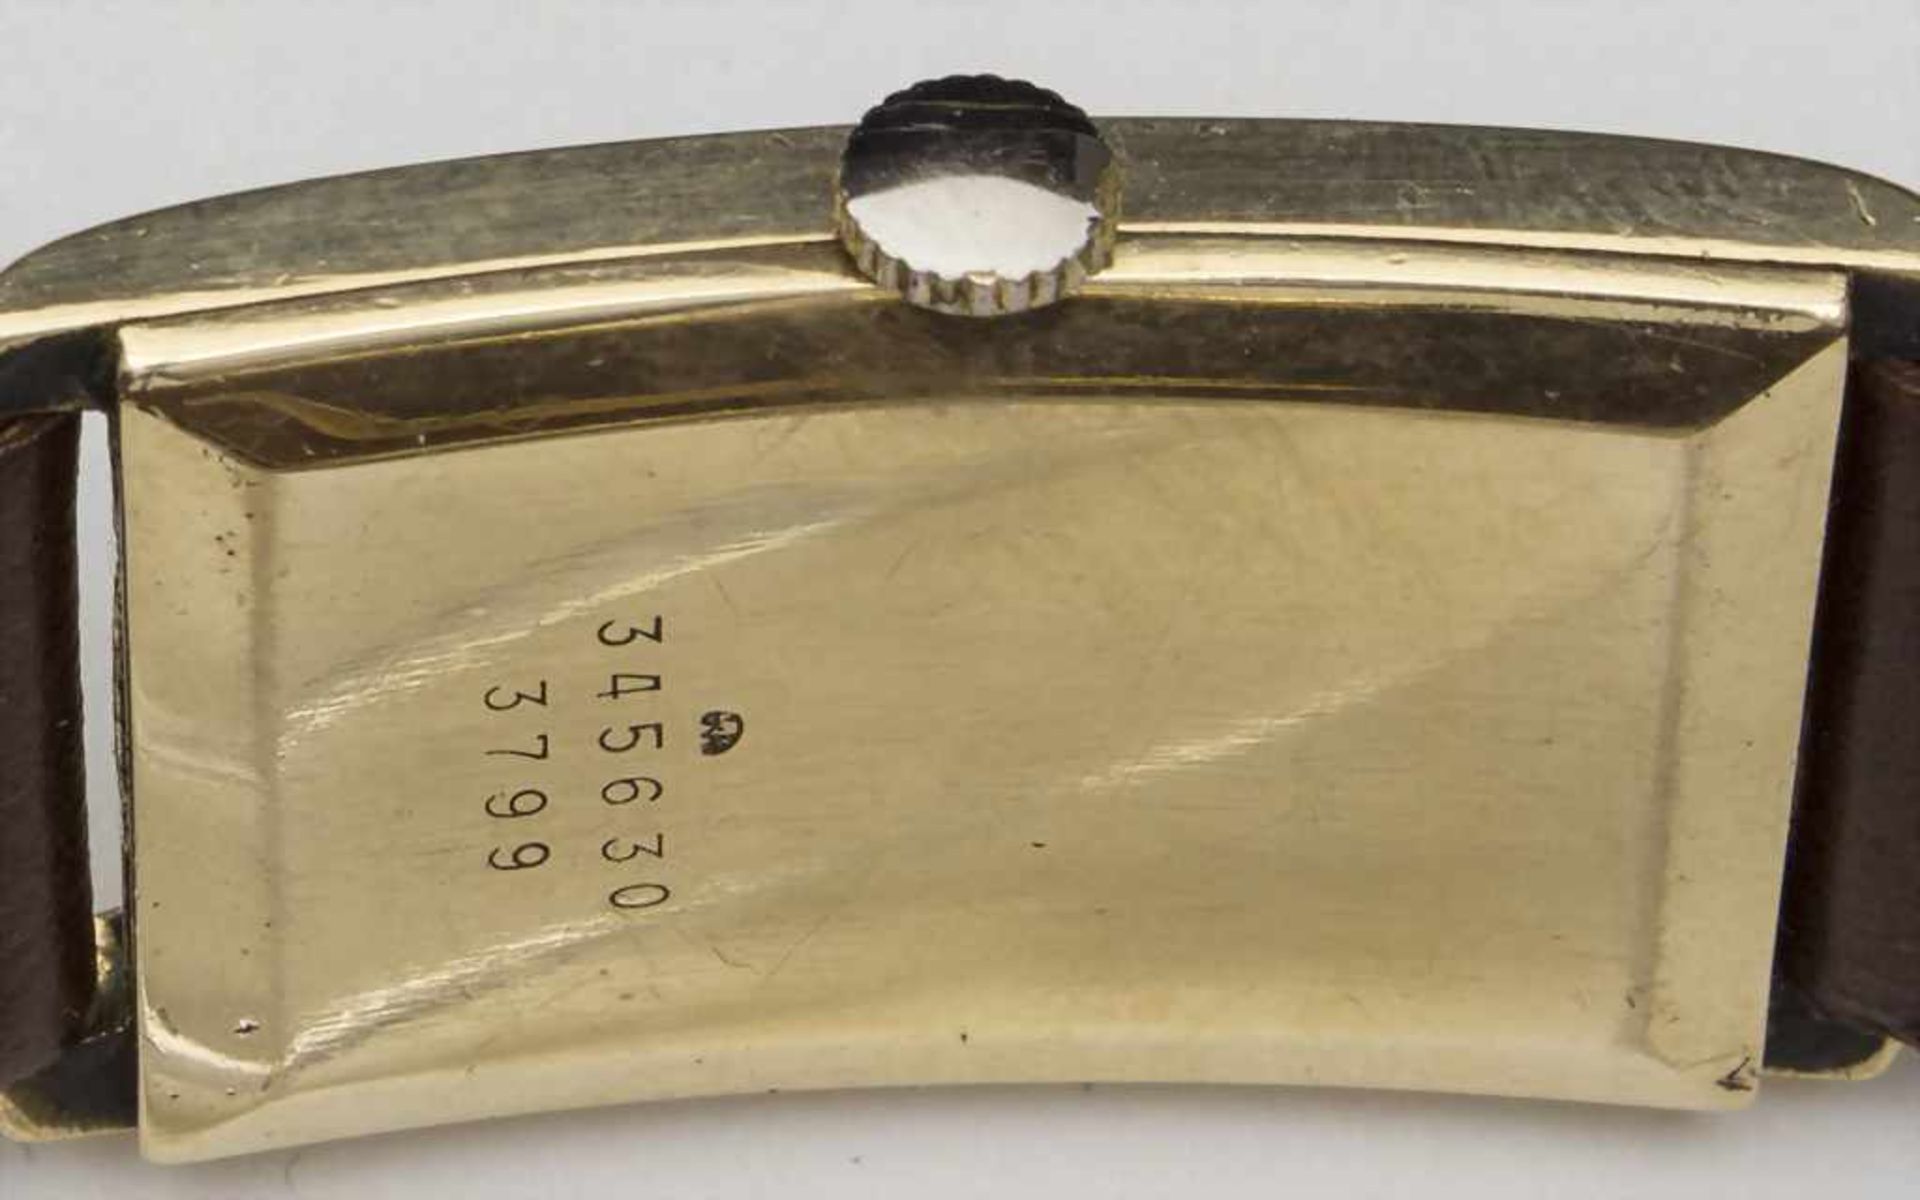 HAU Baume & Mercier, Schweiz, um 1950Gehäuse: 18Kt 750/000 Gold, Nr. 345630 ;Ref. Nr. 3799, - Bild 2 aus 3